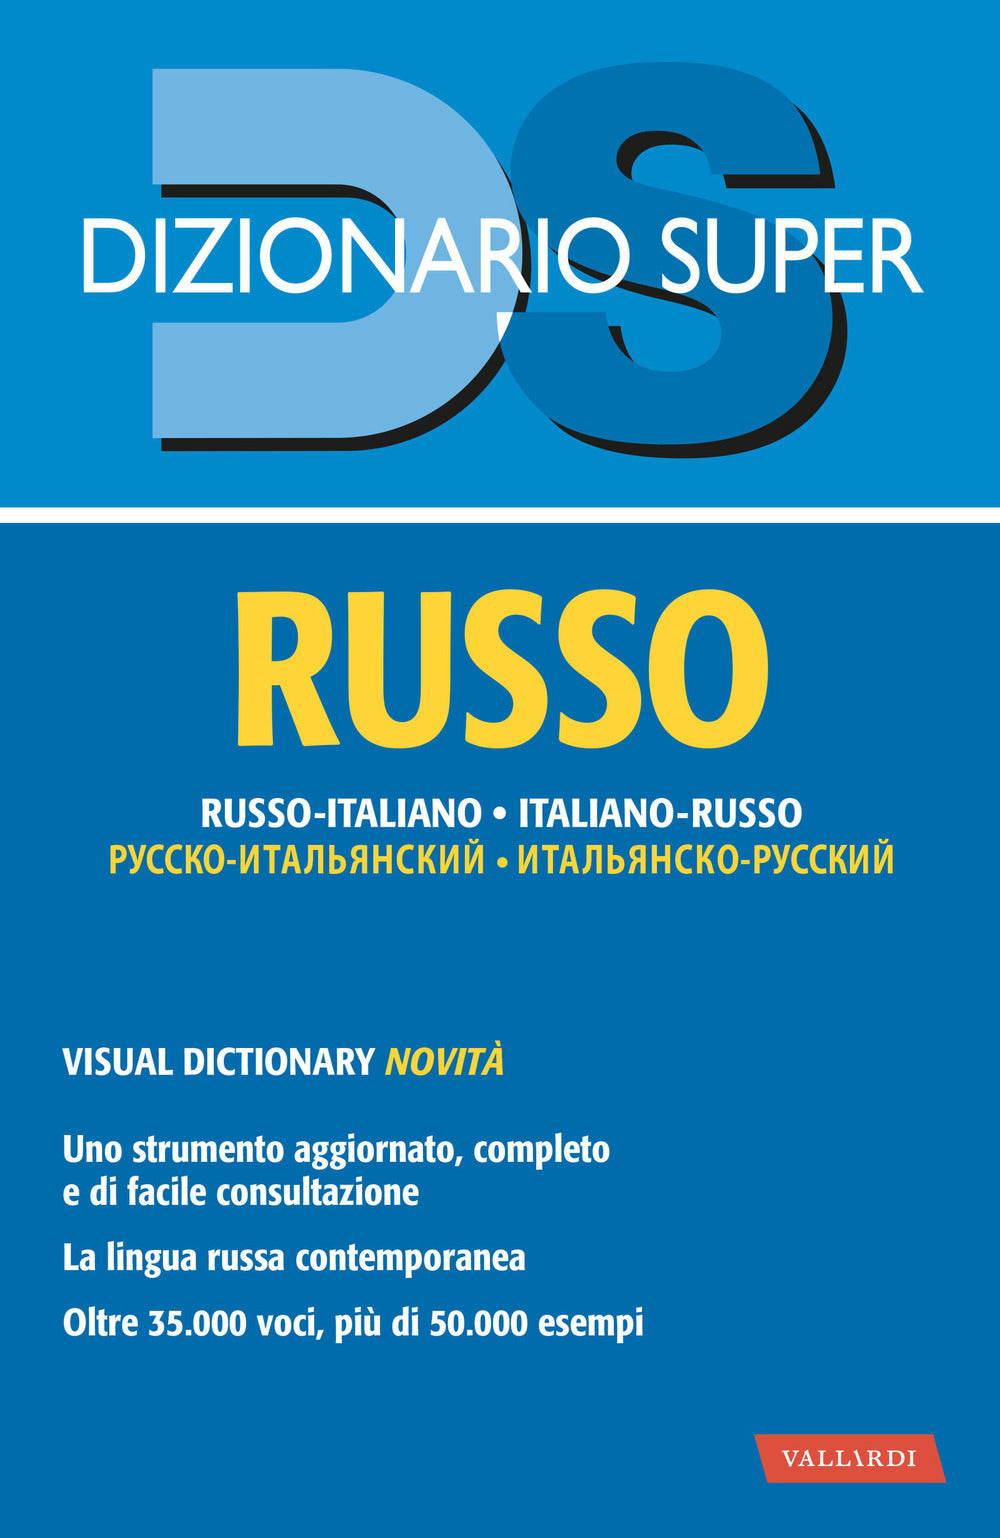 Dizionario russo. Russo-italiano, italiano-russo.